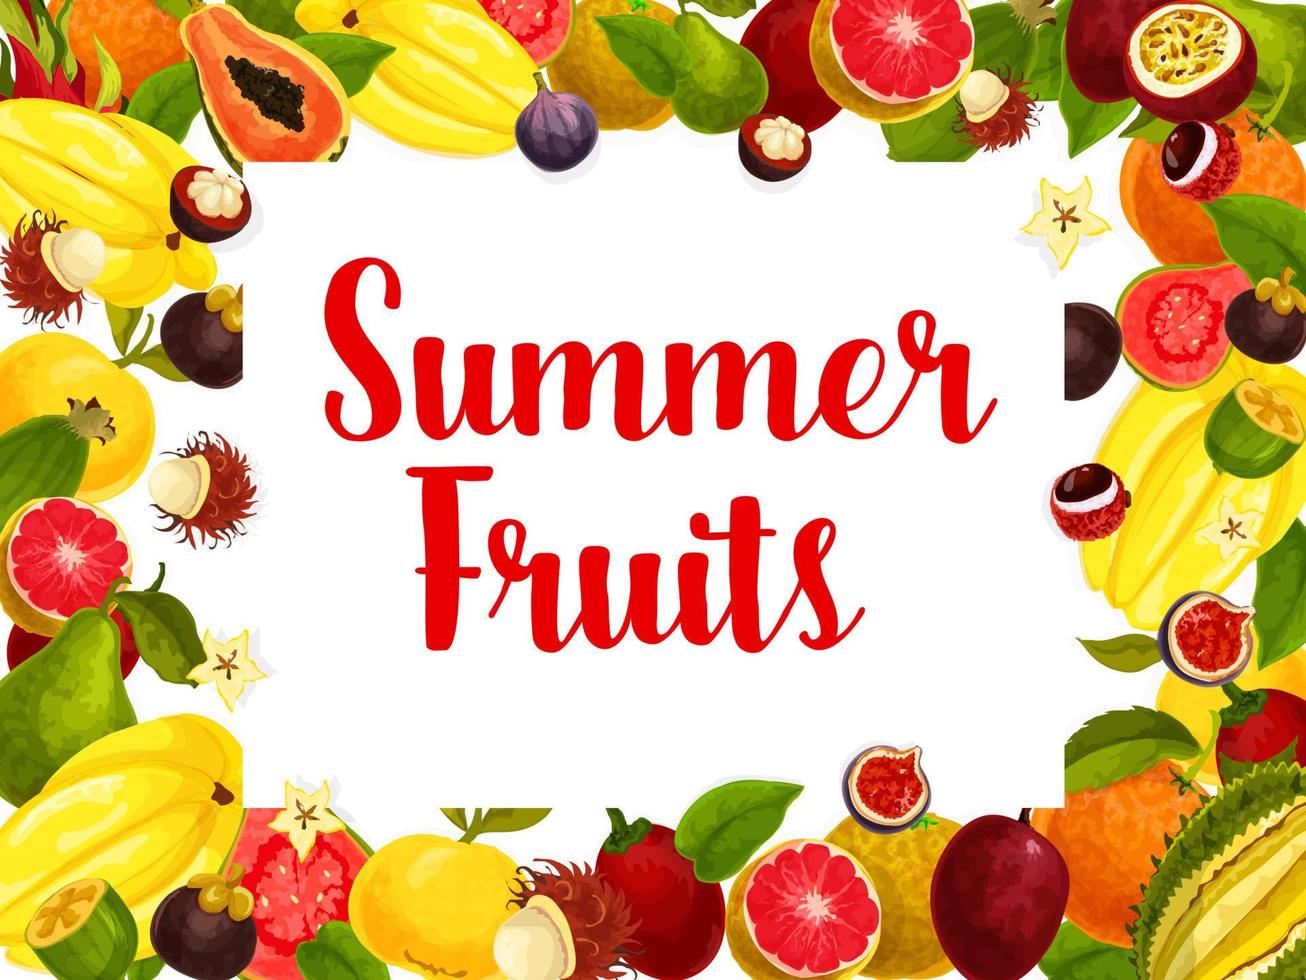 cartaz de loja de vetores de frutas tropicais exóticas